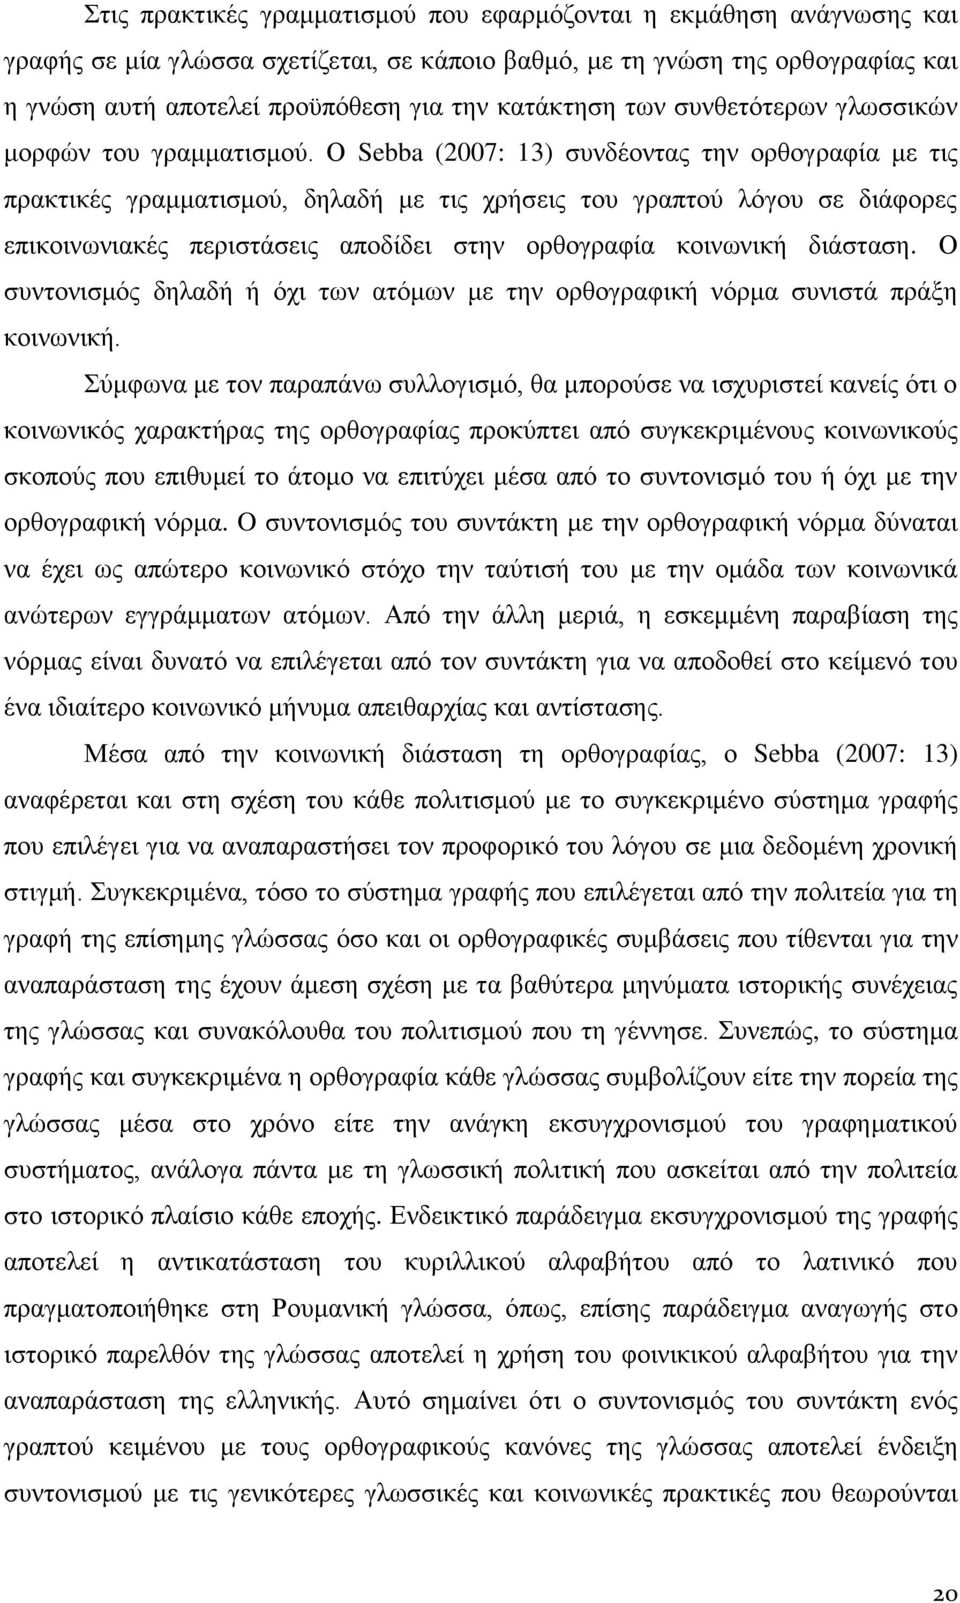 Ο Sebba (2007: 13) συνδέοντας την ορθογραφία με τις πρακτικές γραμματισμού, δηλαδή με τις χρήσεις του γραπτού λόγου σε διάφορες επικοινωνιακές περιστάσεις αποδίδει στην ορθογραφία κοινωνική διάσταση.